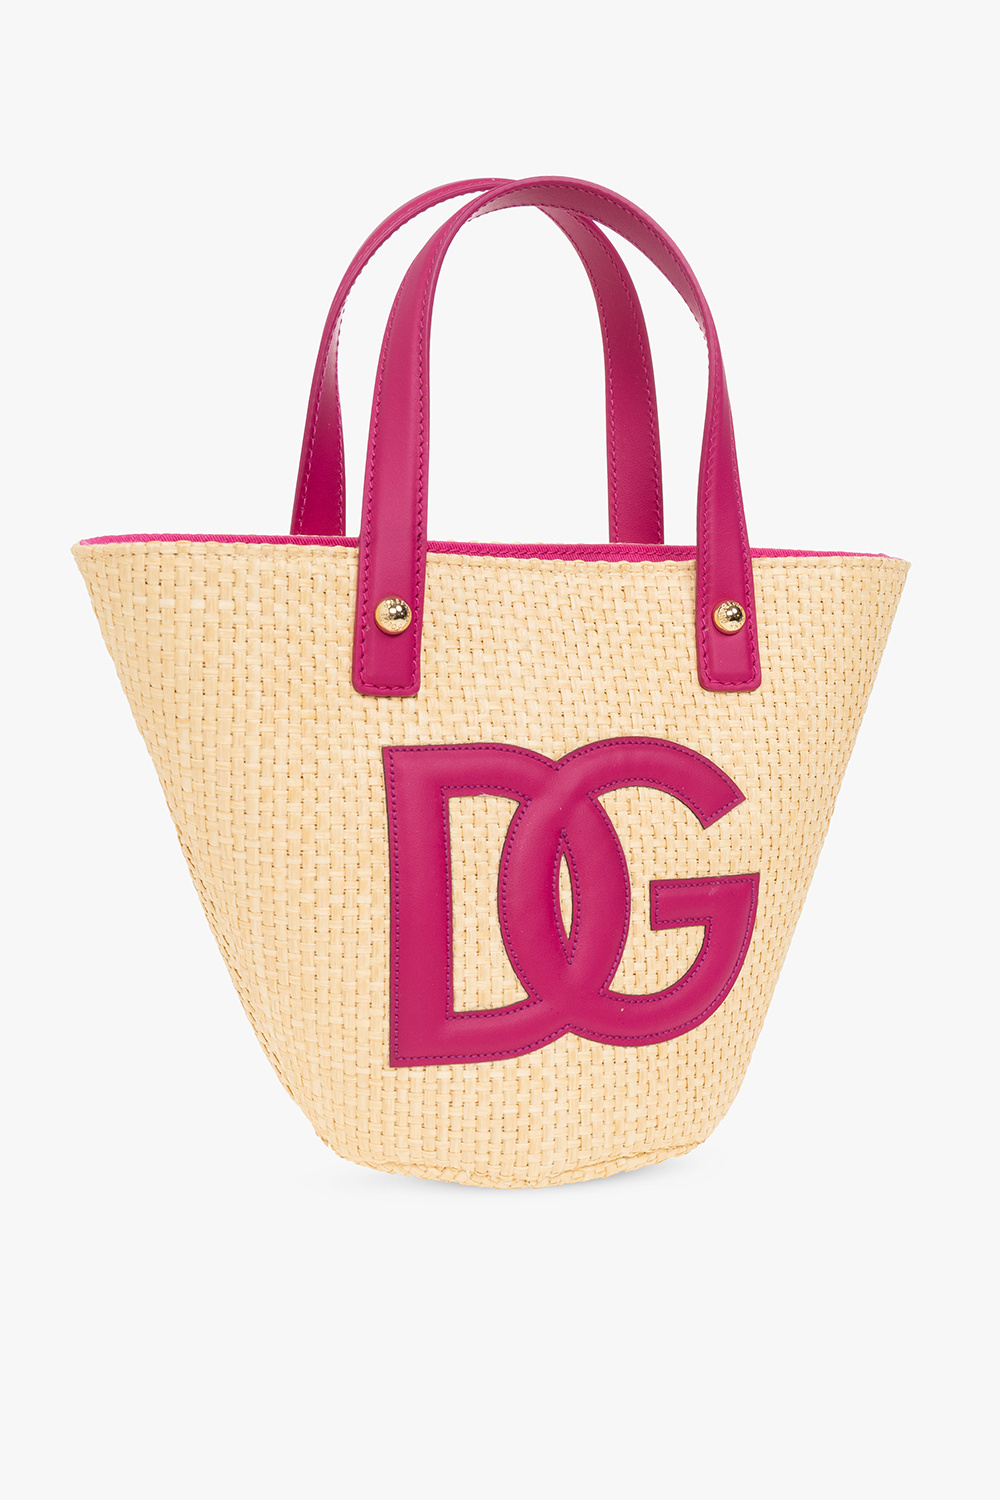 Dolce & Gabbana Kids Handbag with logo